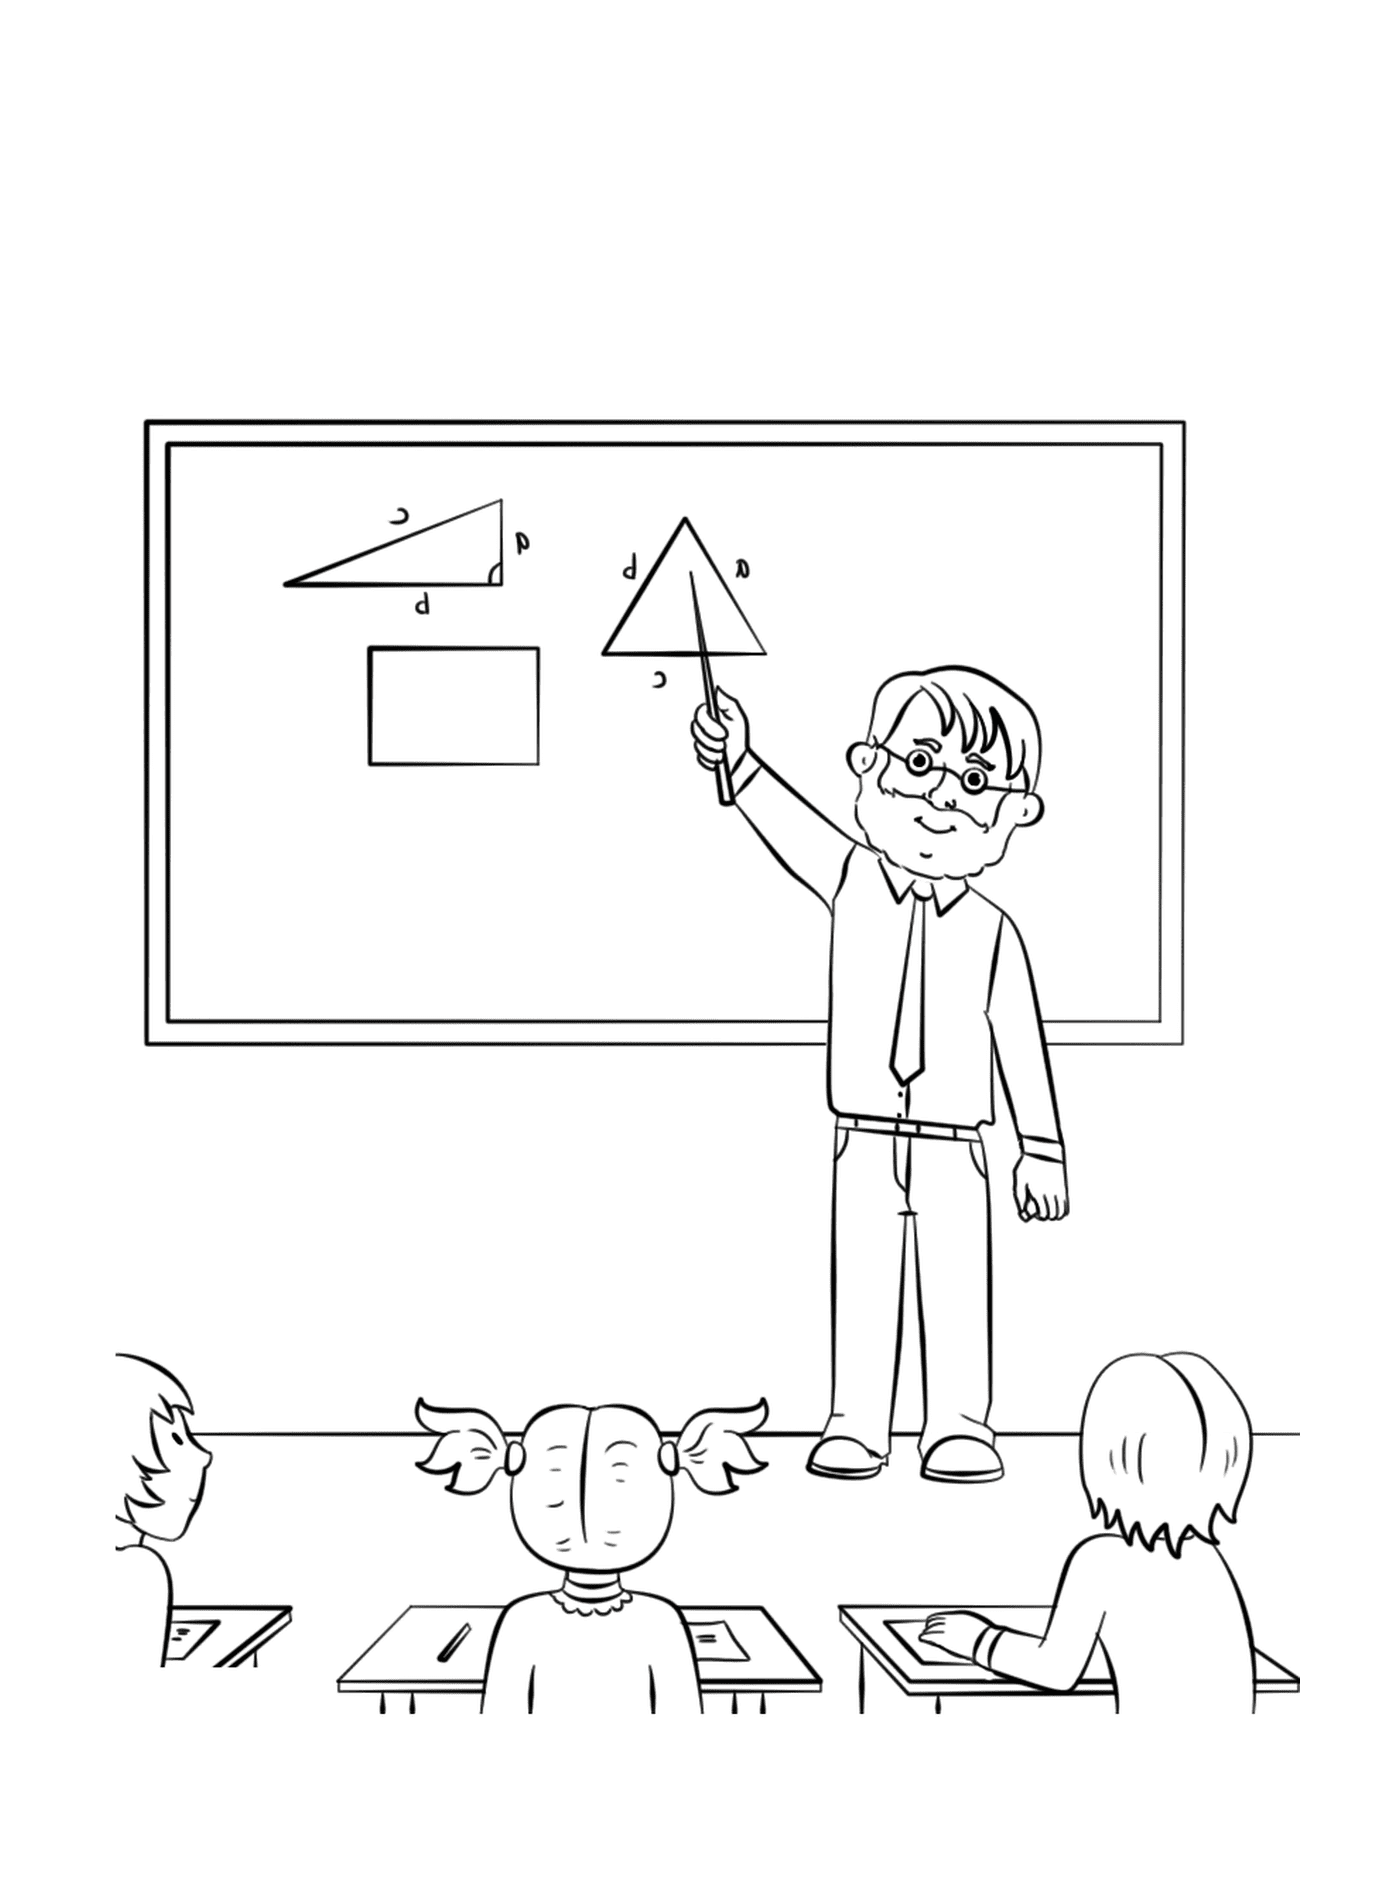  शिक्षक एक त्रिकोण का प्रतिनिधित्व करता है 